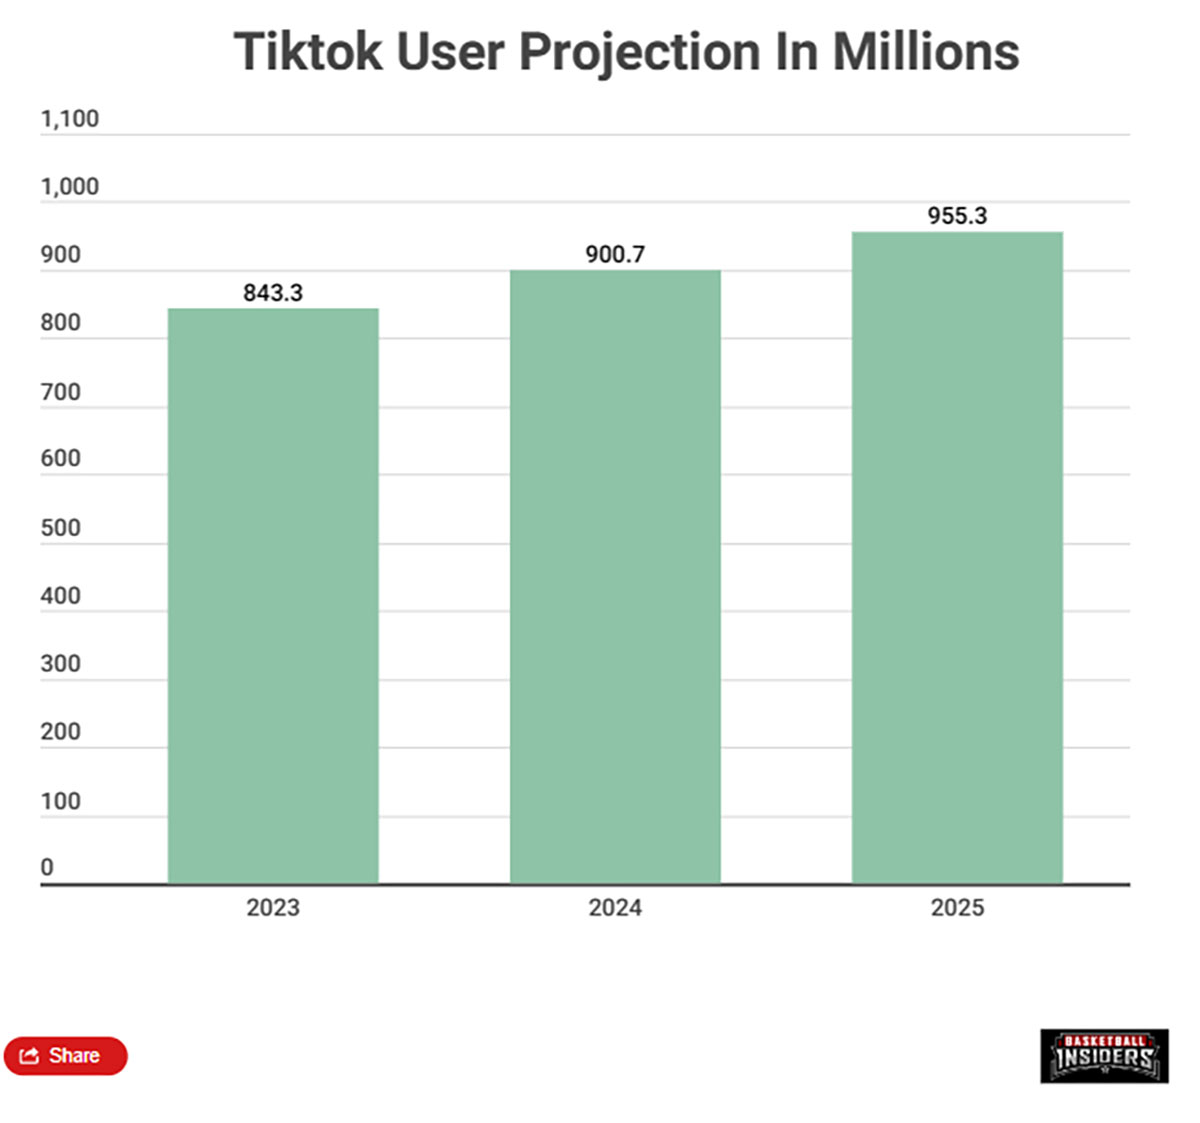 TikTok proiettata a 955 milioni di utenti entro il 2025